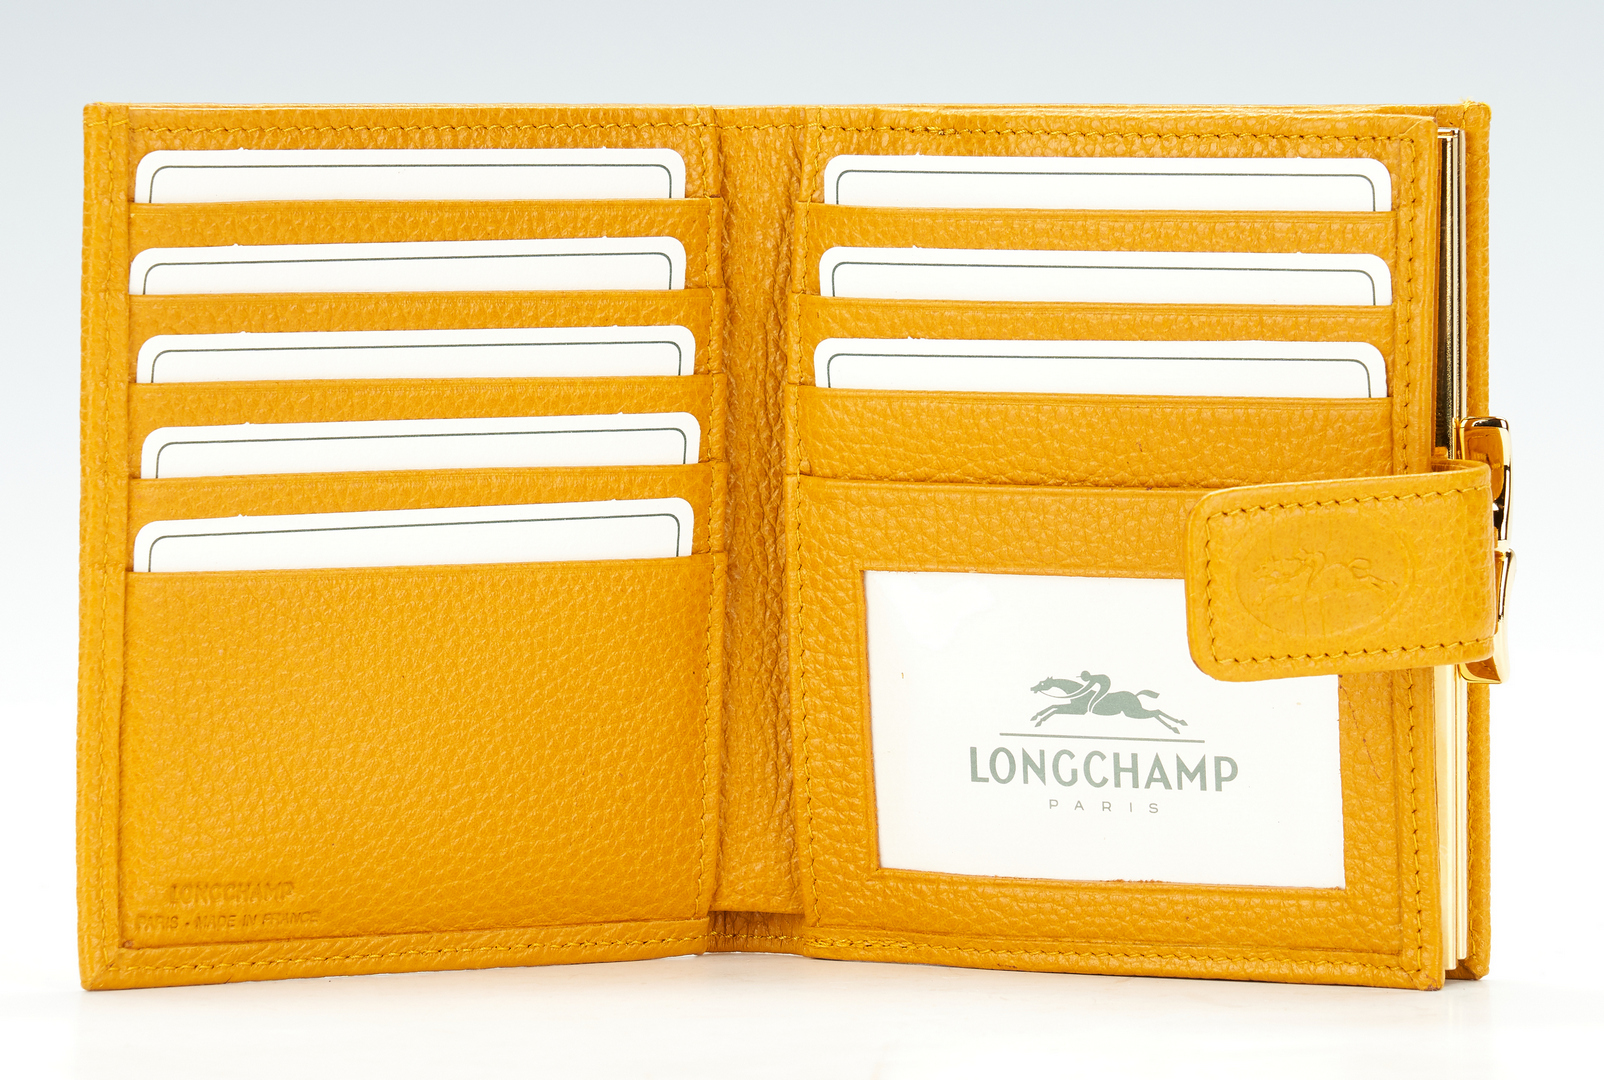 Lot 1026: 5 European Designer Items, incl. Loewe & Longchamp